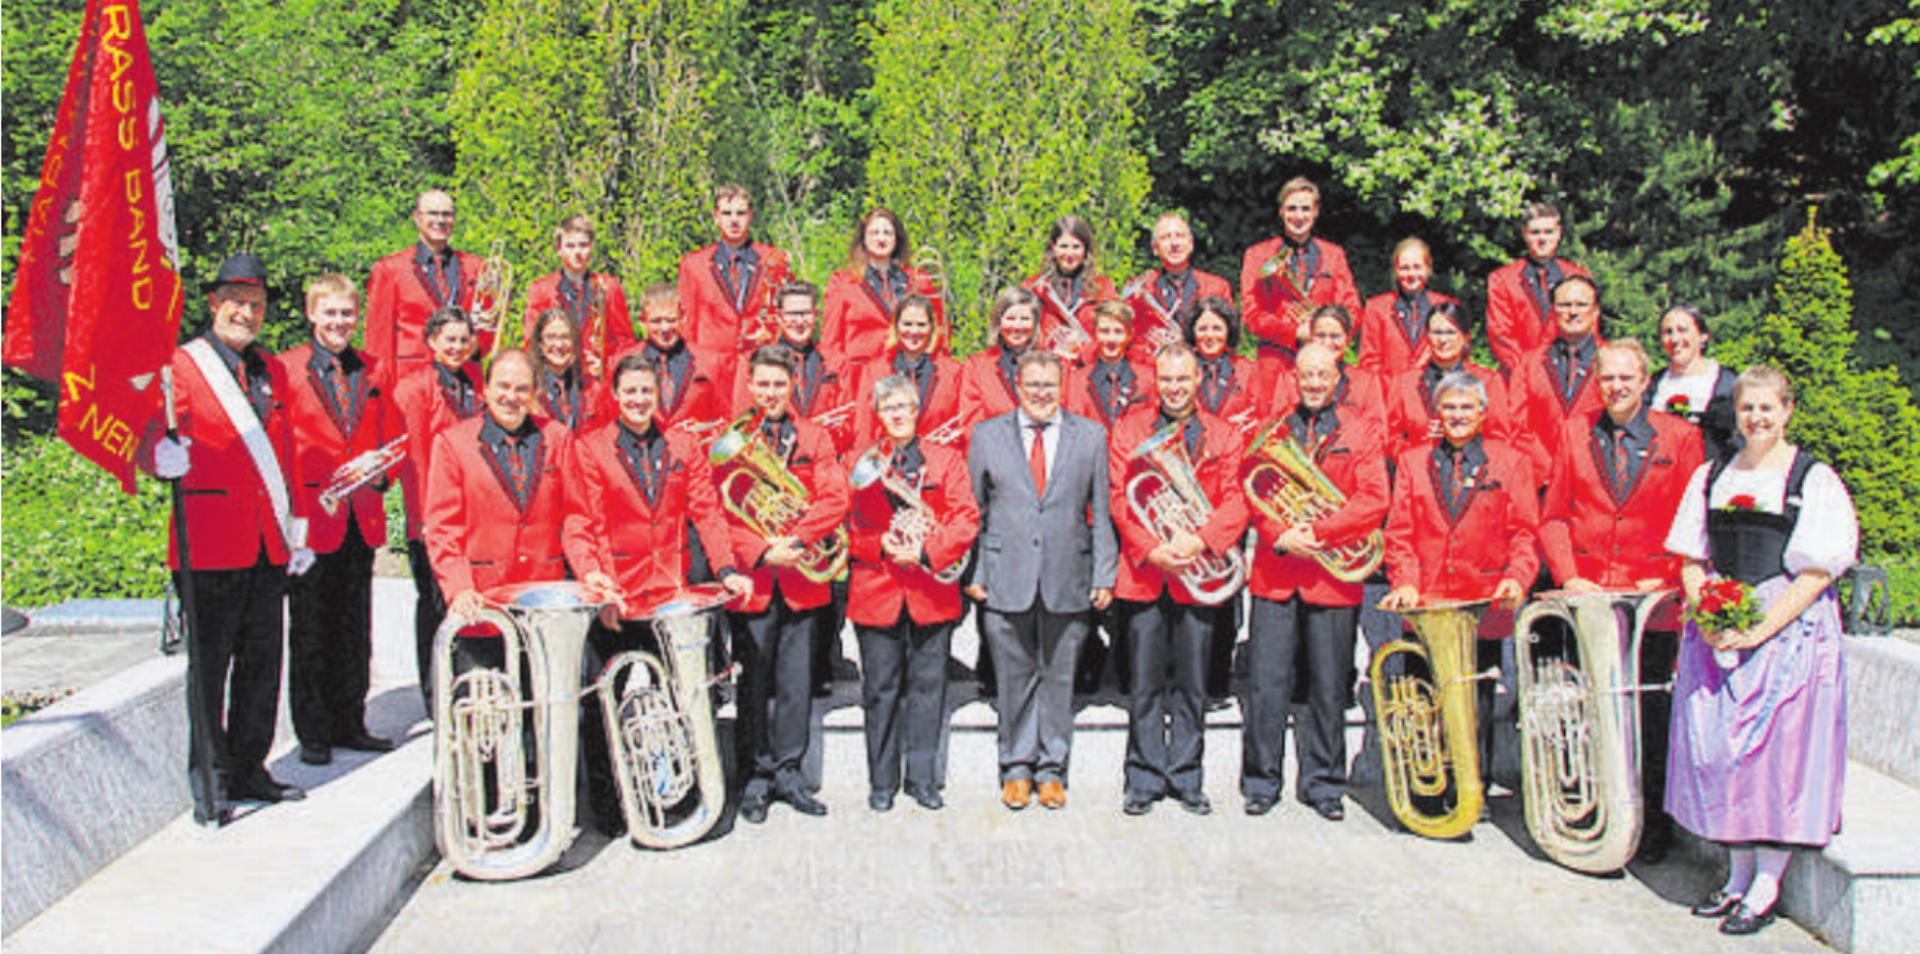 Die Brass Band «Harmonie» Saanen spielt am Freitag, 1. Juli um 20 Uhr im Musikpavillon in Saanen. FOTO: ZVG